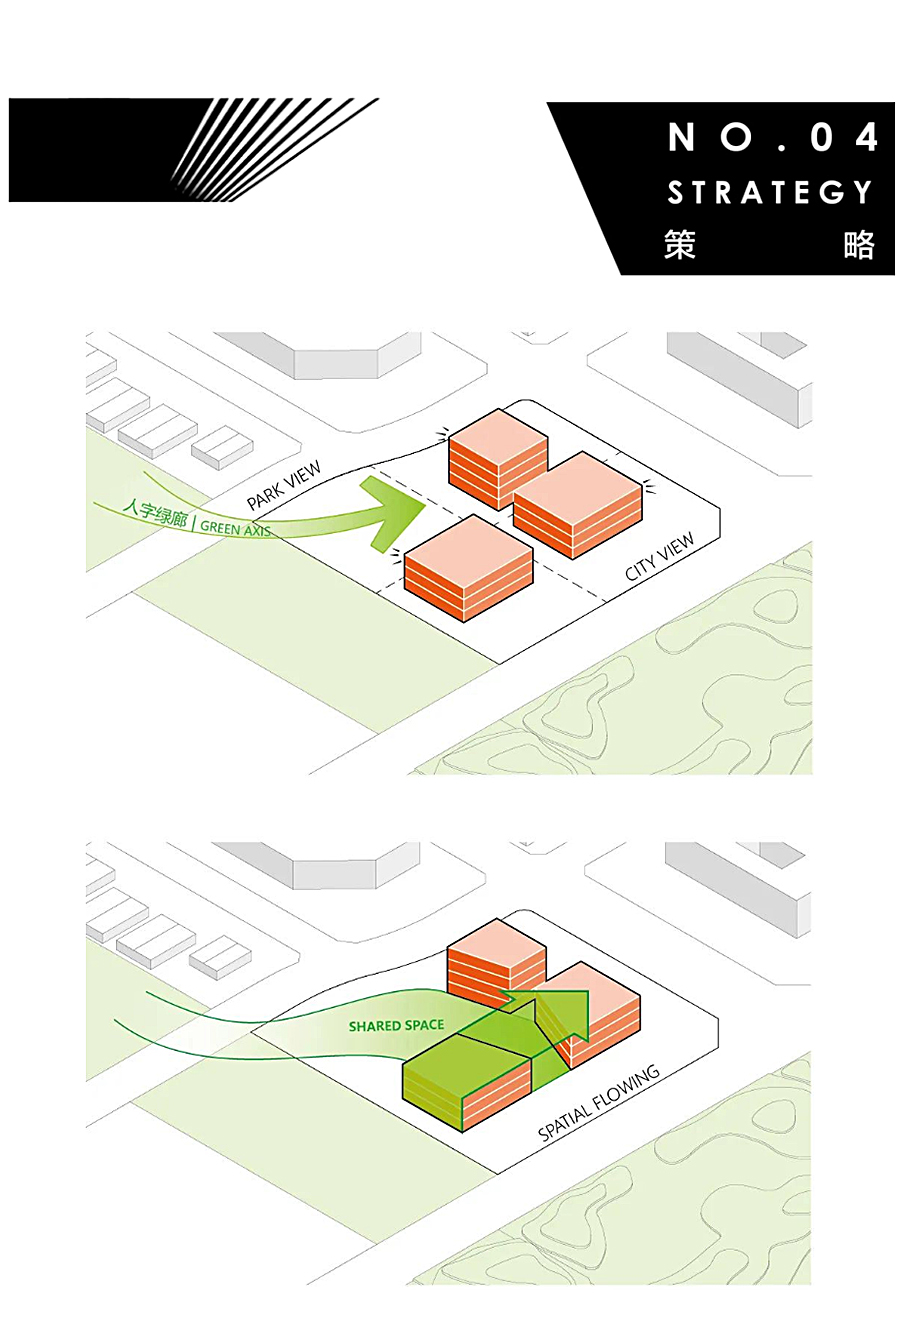 一个建筑代表一座新城-_-成都招商天府新区城市规划展示馆_0012_图层-13.jpg